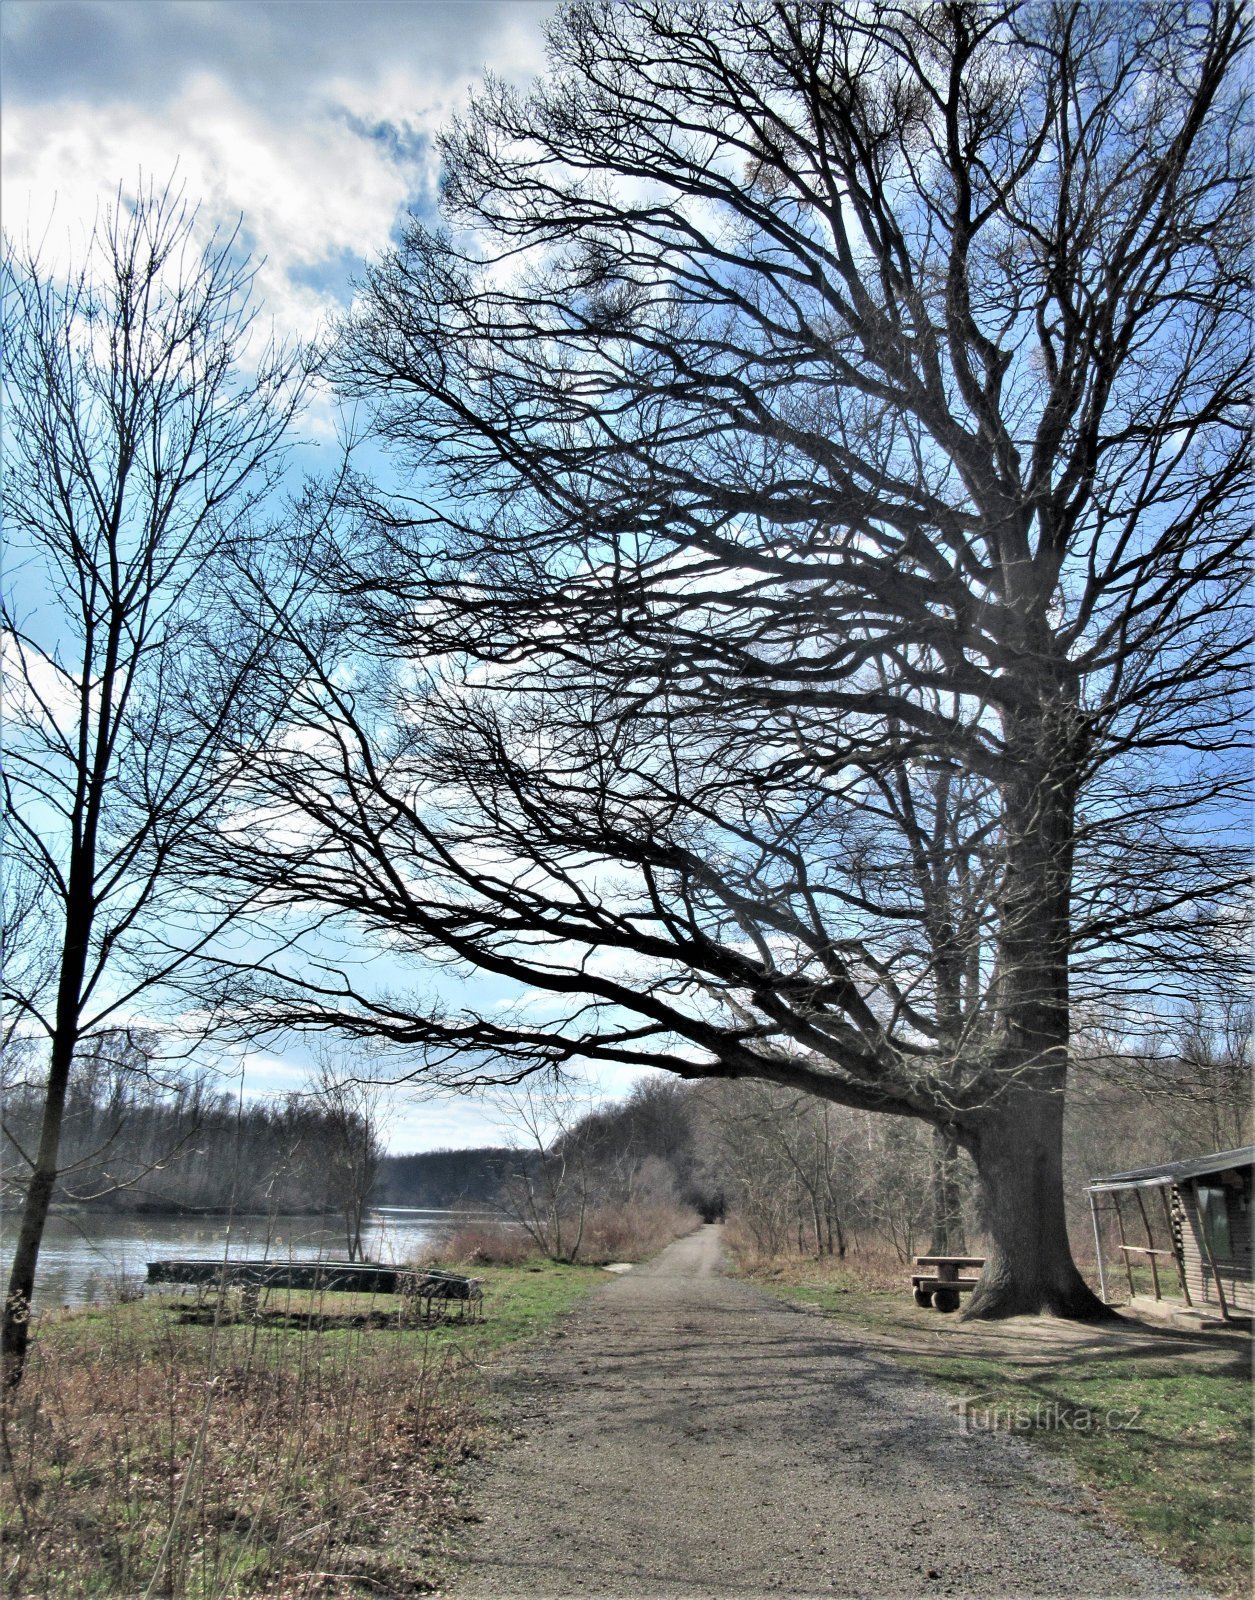 Stejarul este situat lângă drumul de acces asfaltat și pe malul râului Morava